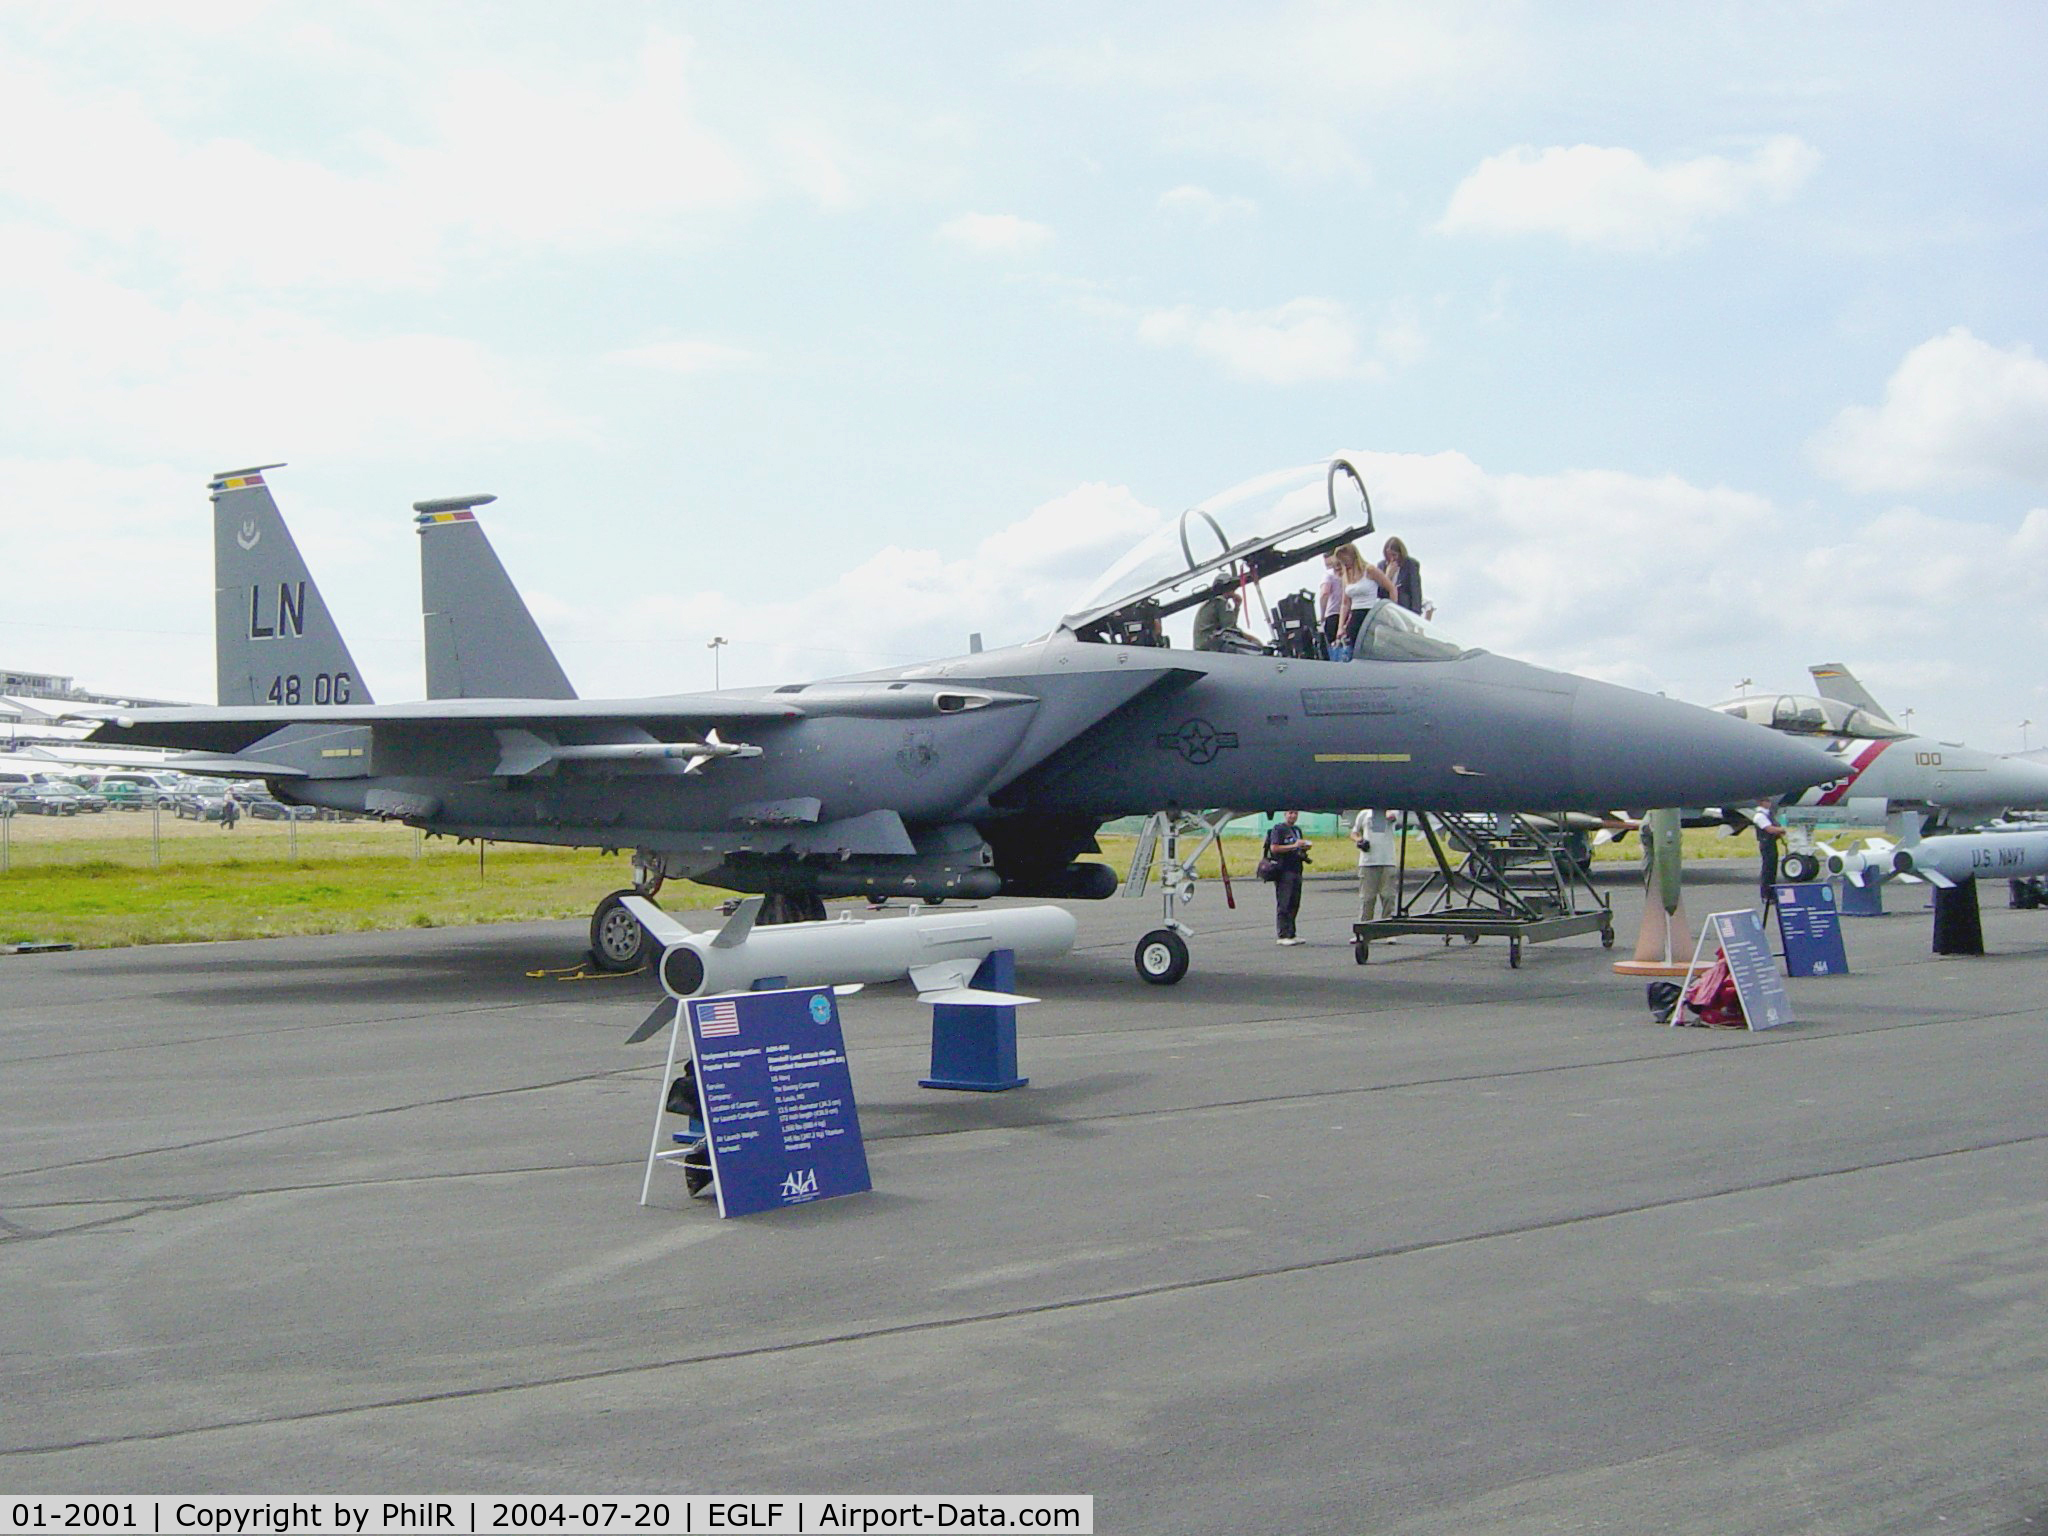 01-2001, 2001 McDonnell Douglas F-15E Strike Eagle C/N 1372/E233, 01-2001 2001 McDonnell Douglas F-15E Eagle FIA